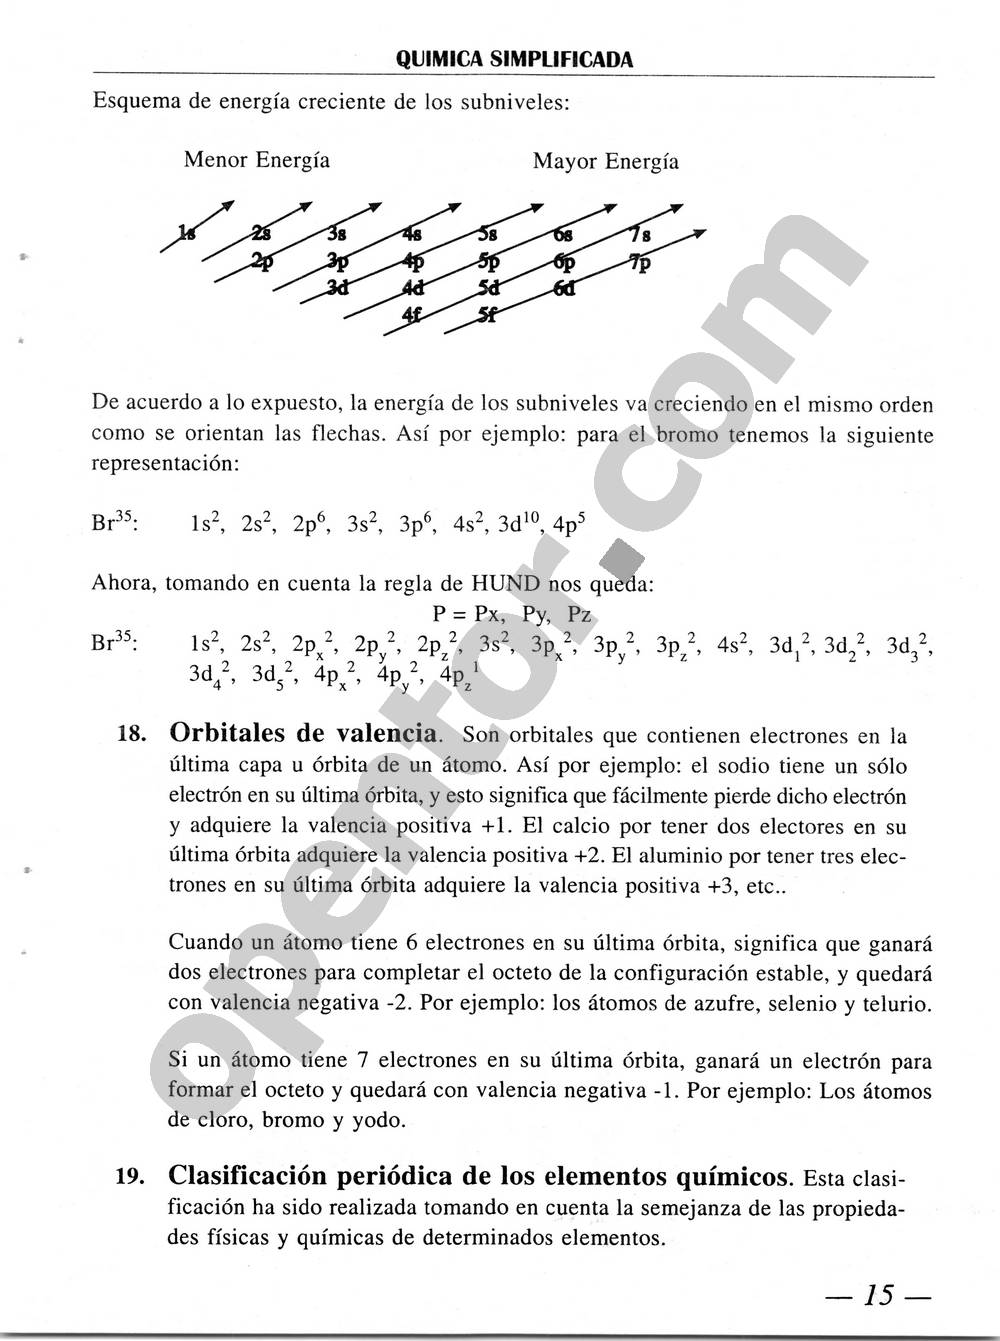 Química Simplificada de Diómedes Solano - Página 15